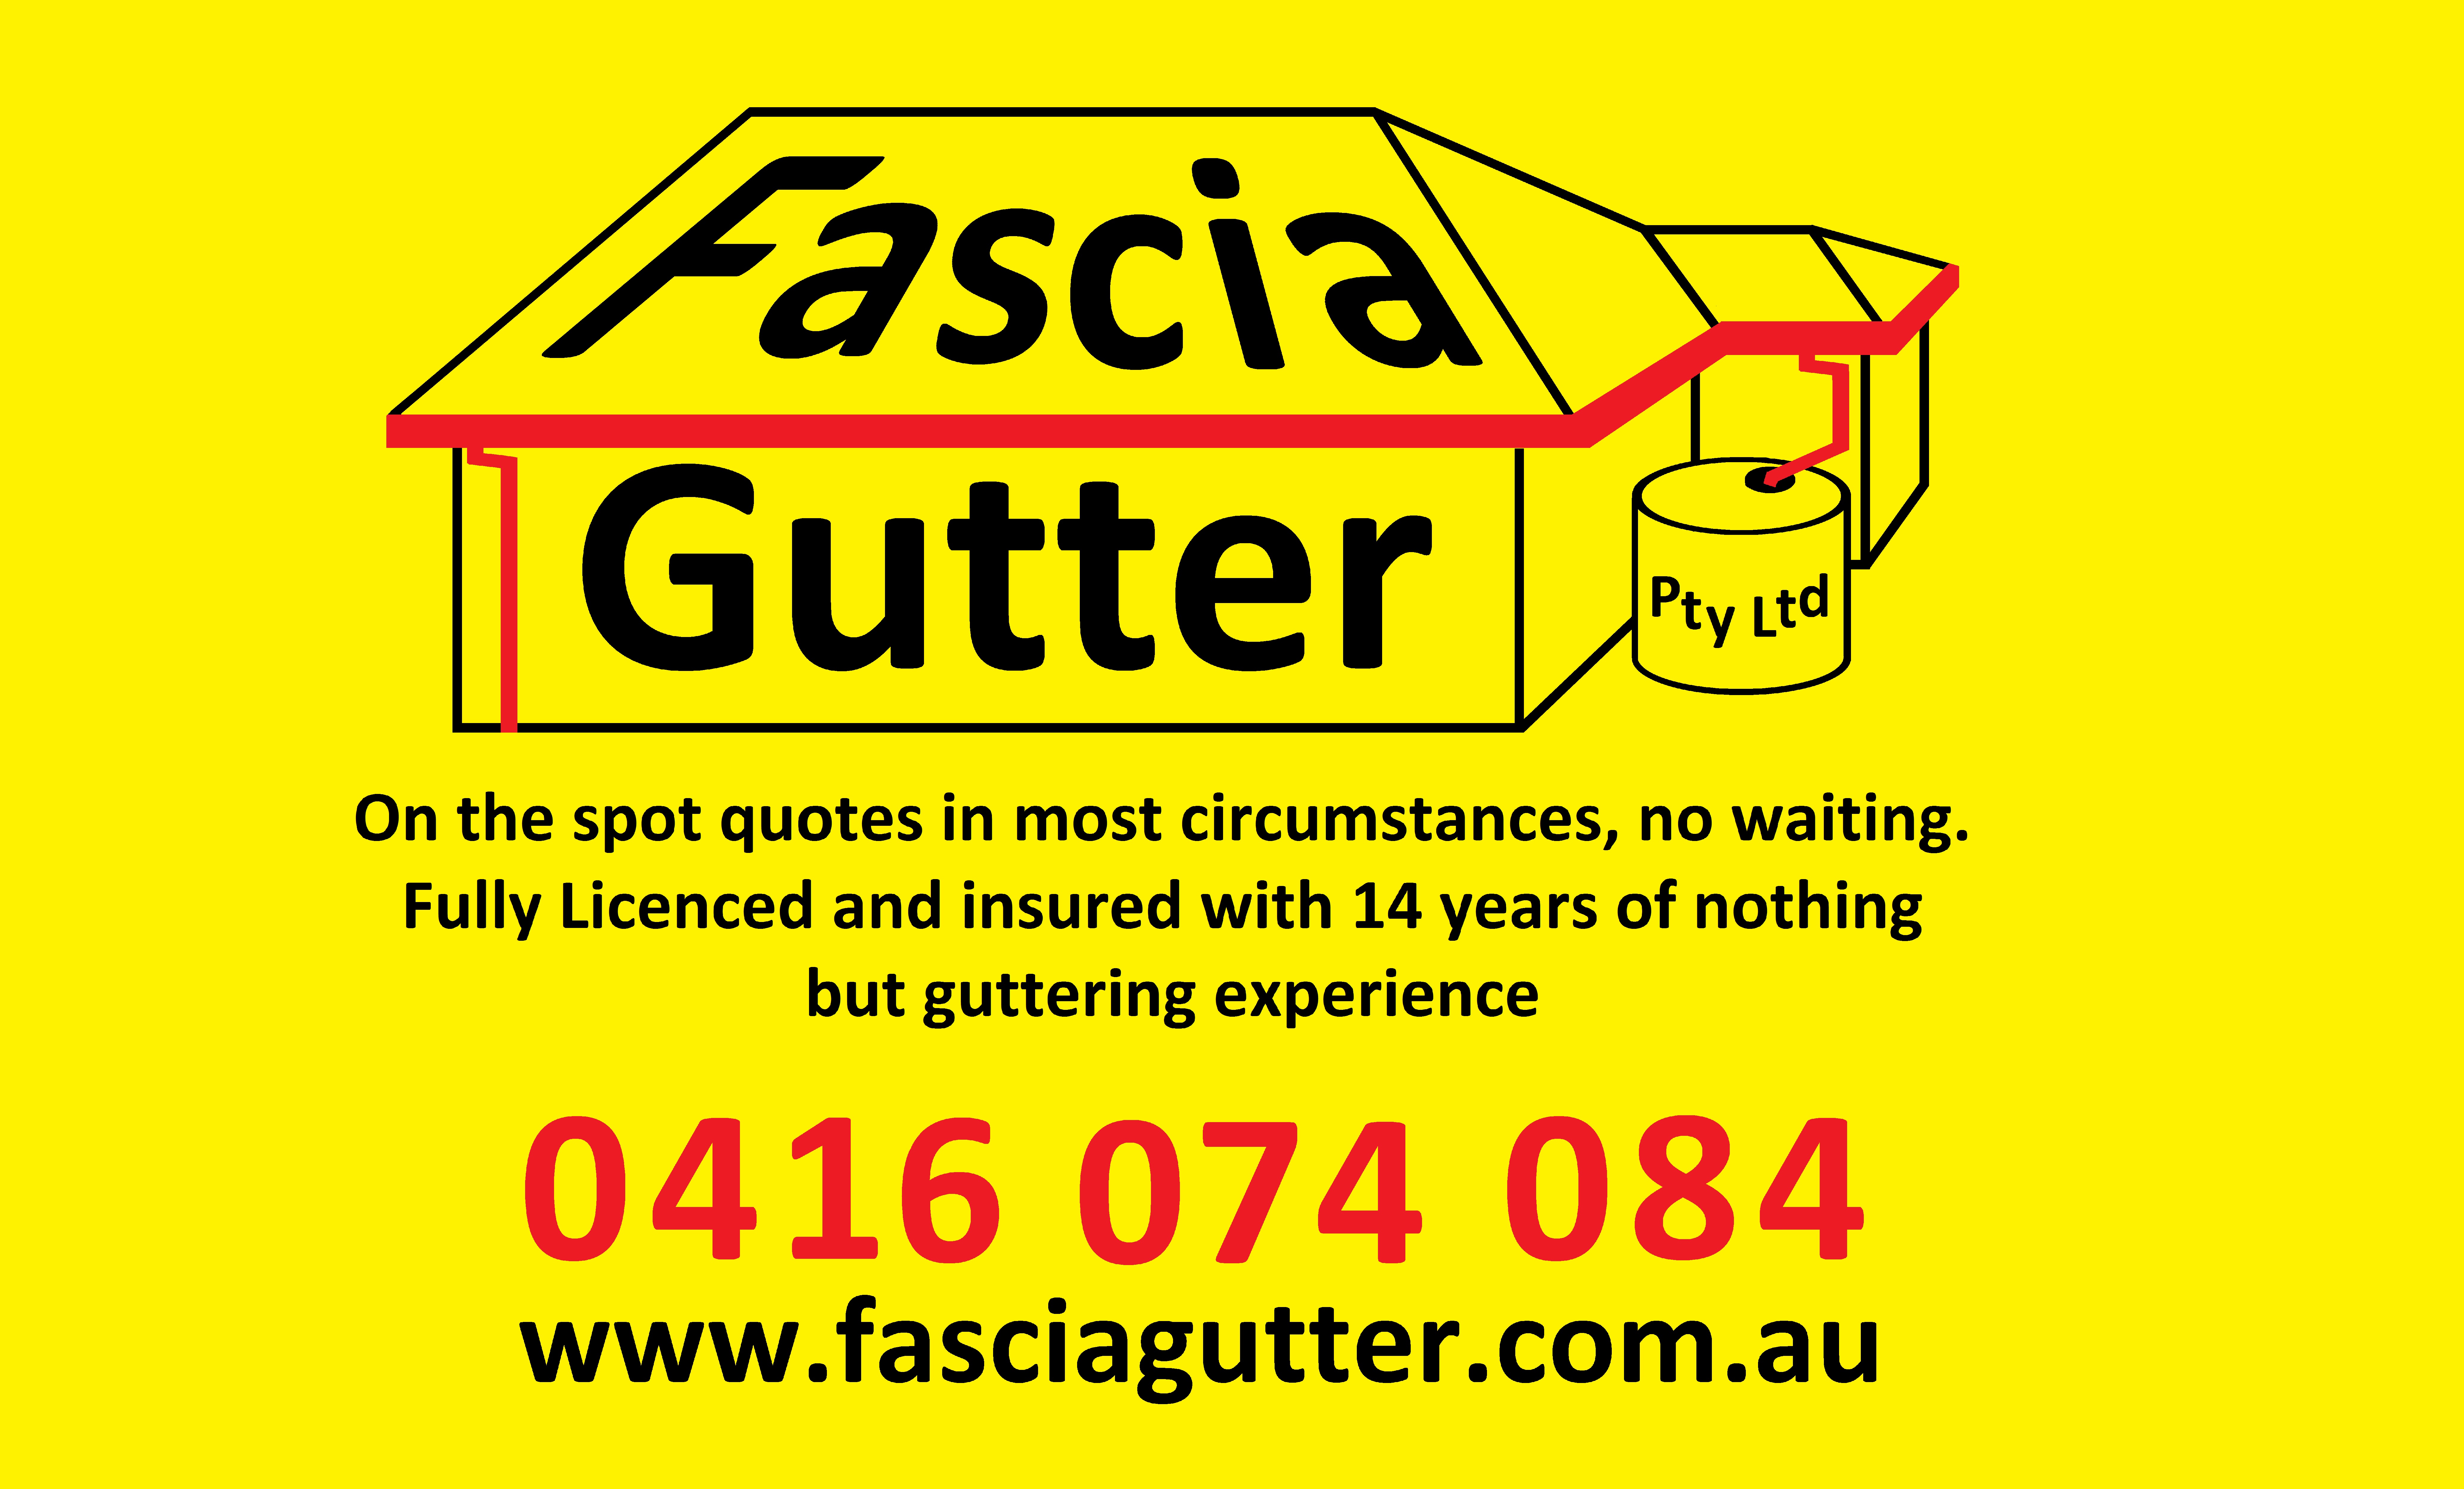 Fascia Gutter Pty Ltd Logo